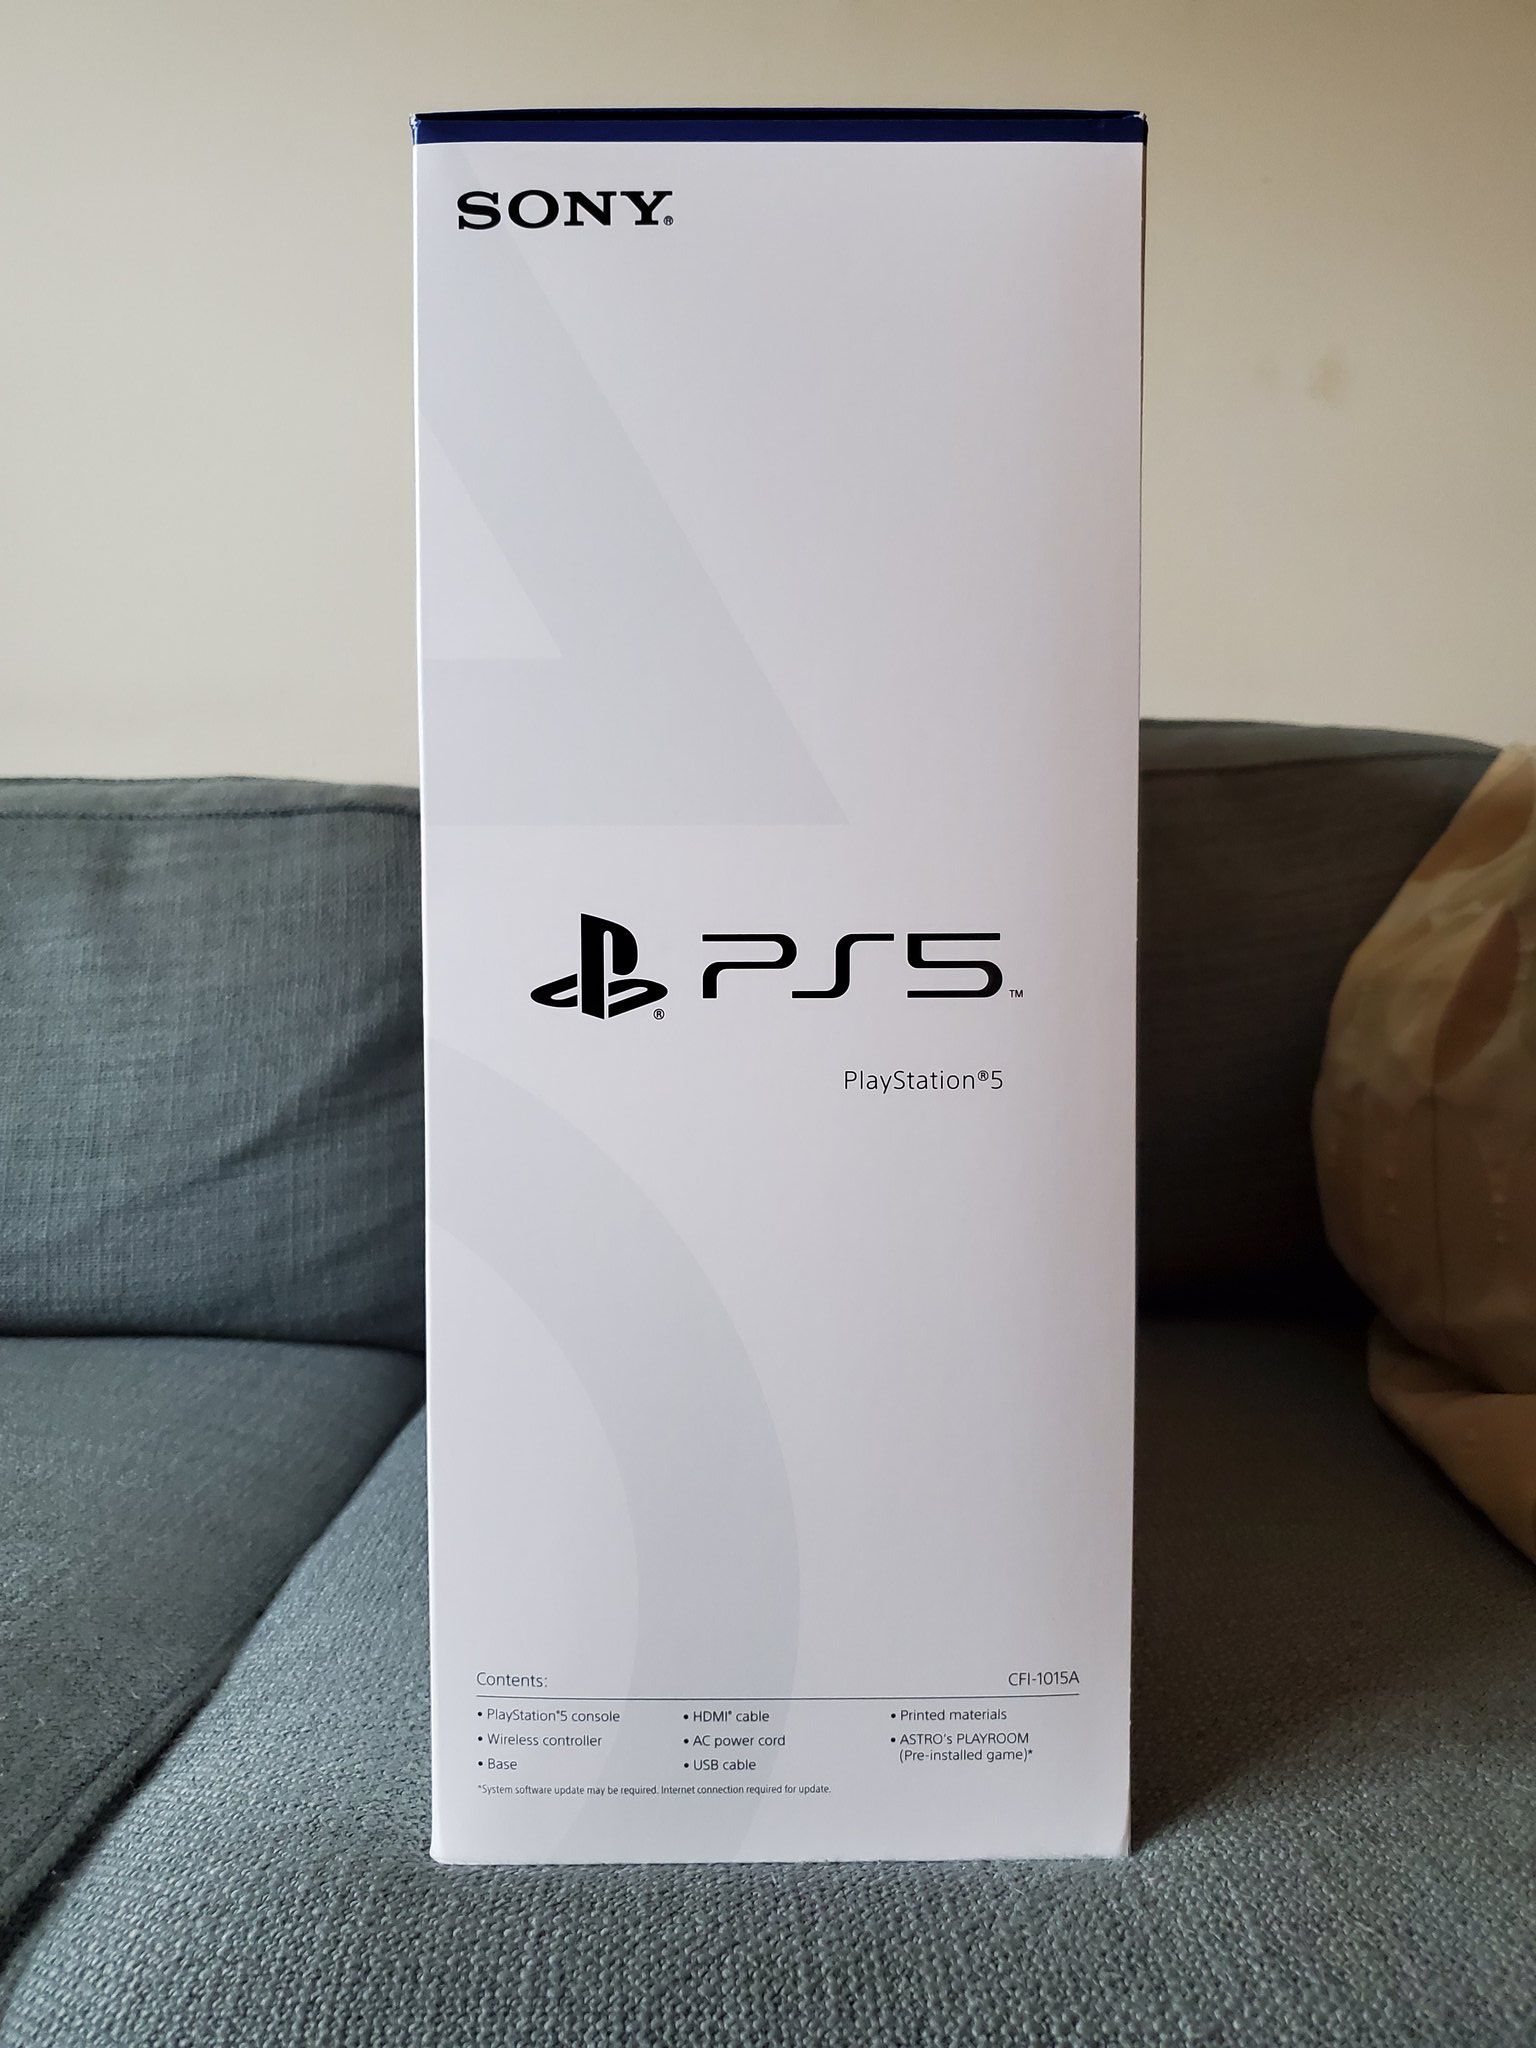 Упаковка PlayStation 5.
Источник: твиттер @SamitSarkar